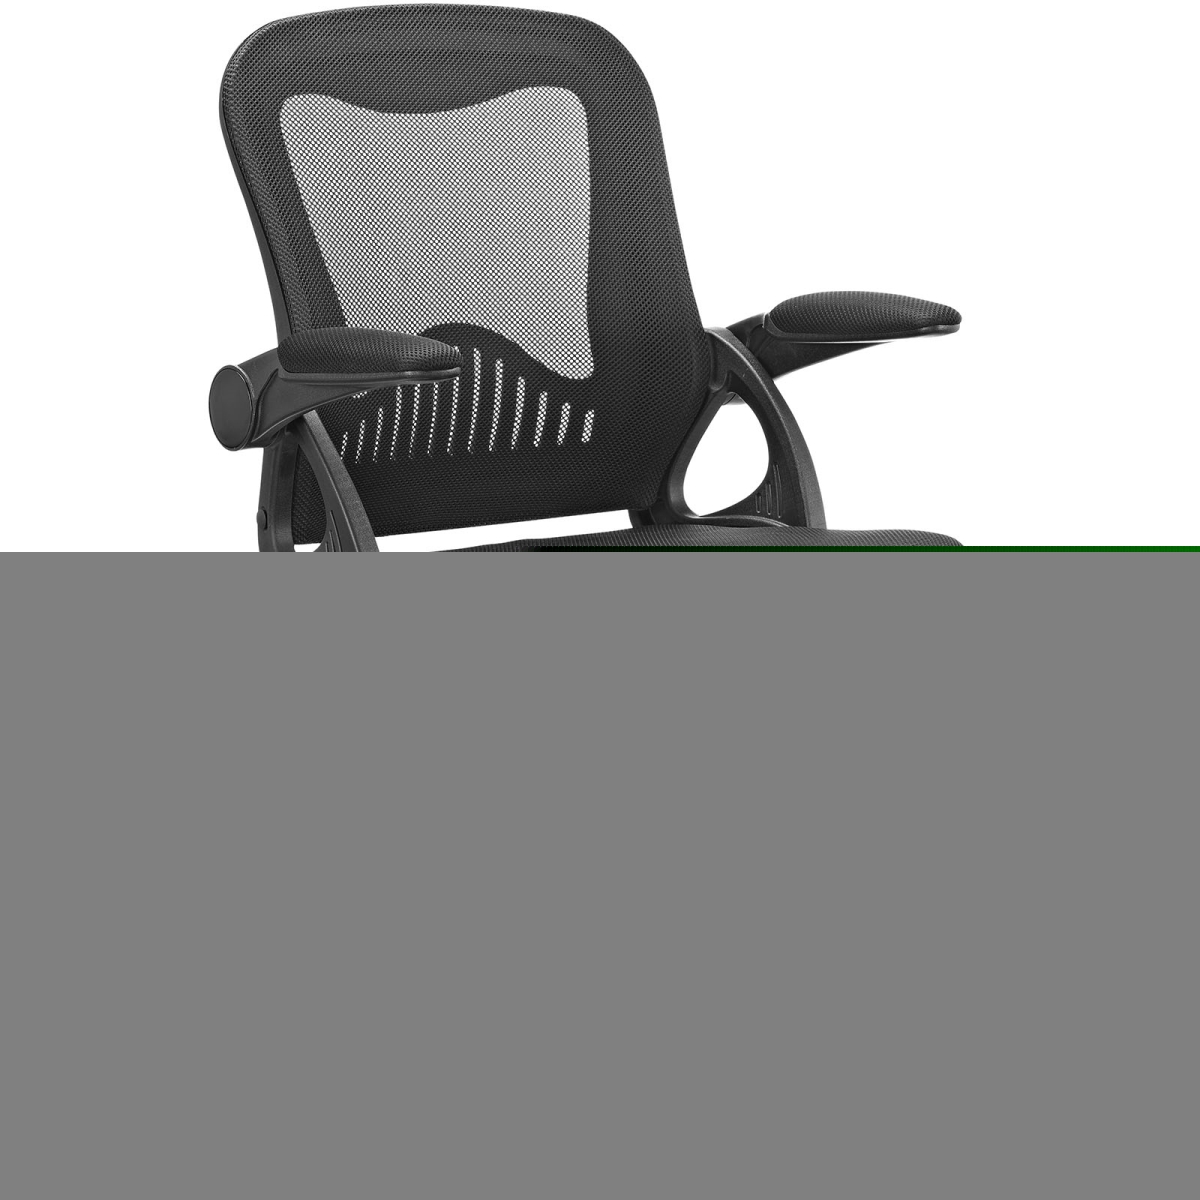 Modway Eei-2155-blk Advance Office Chair, Black